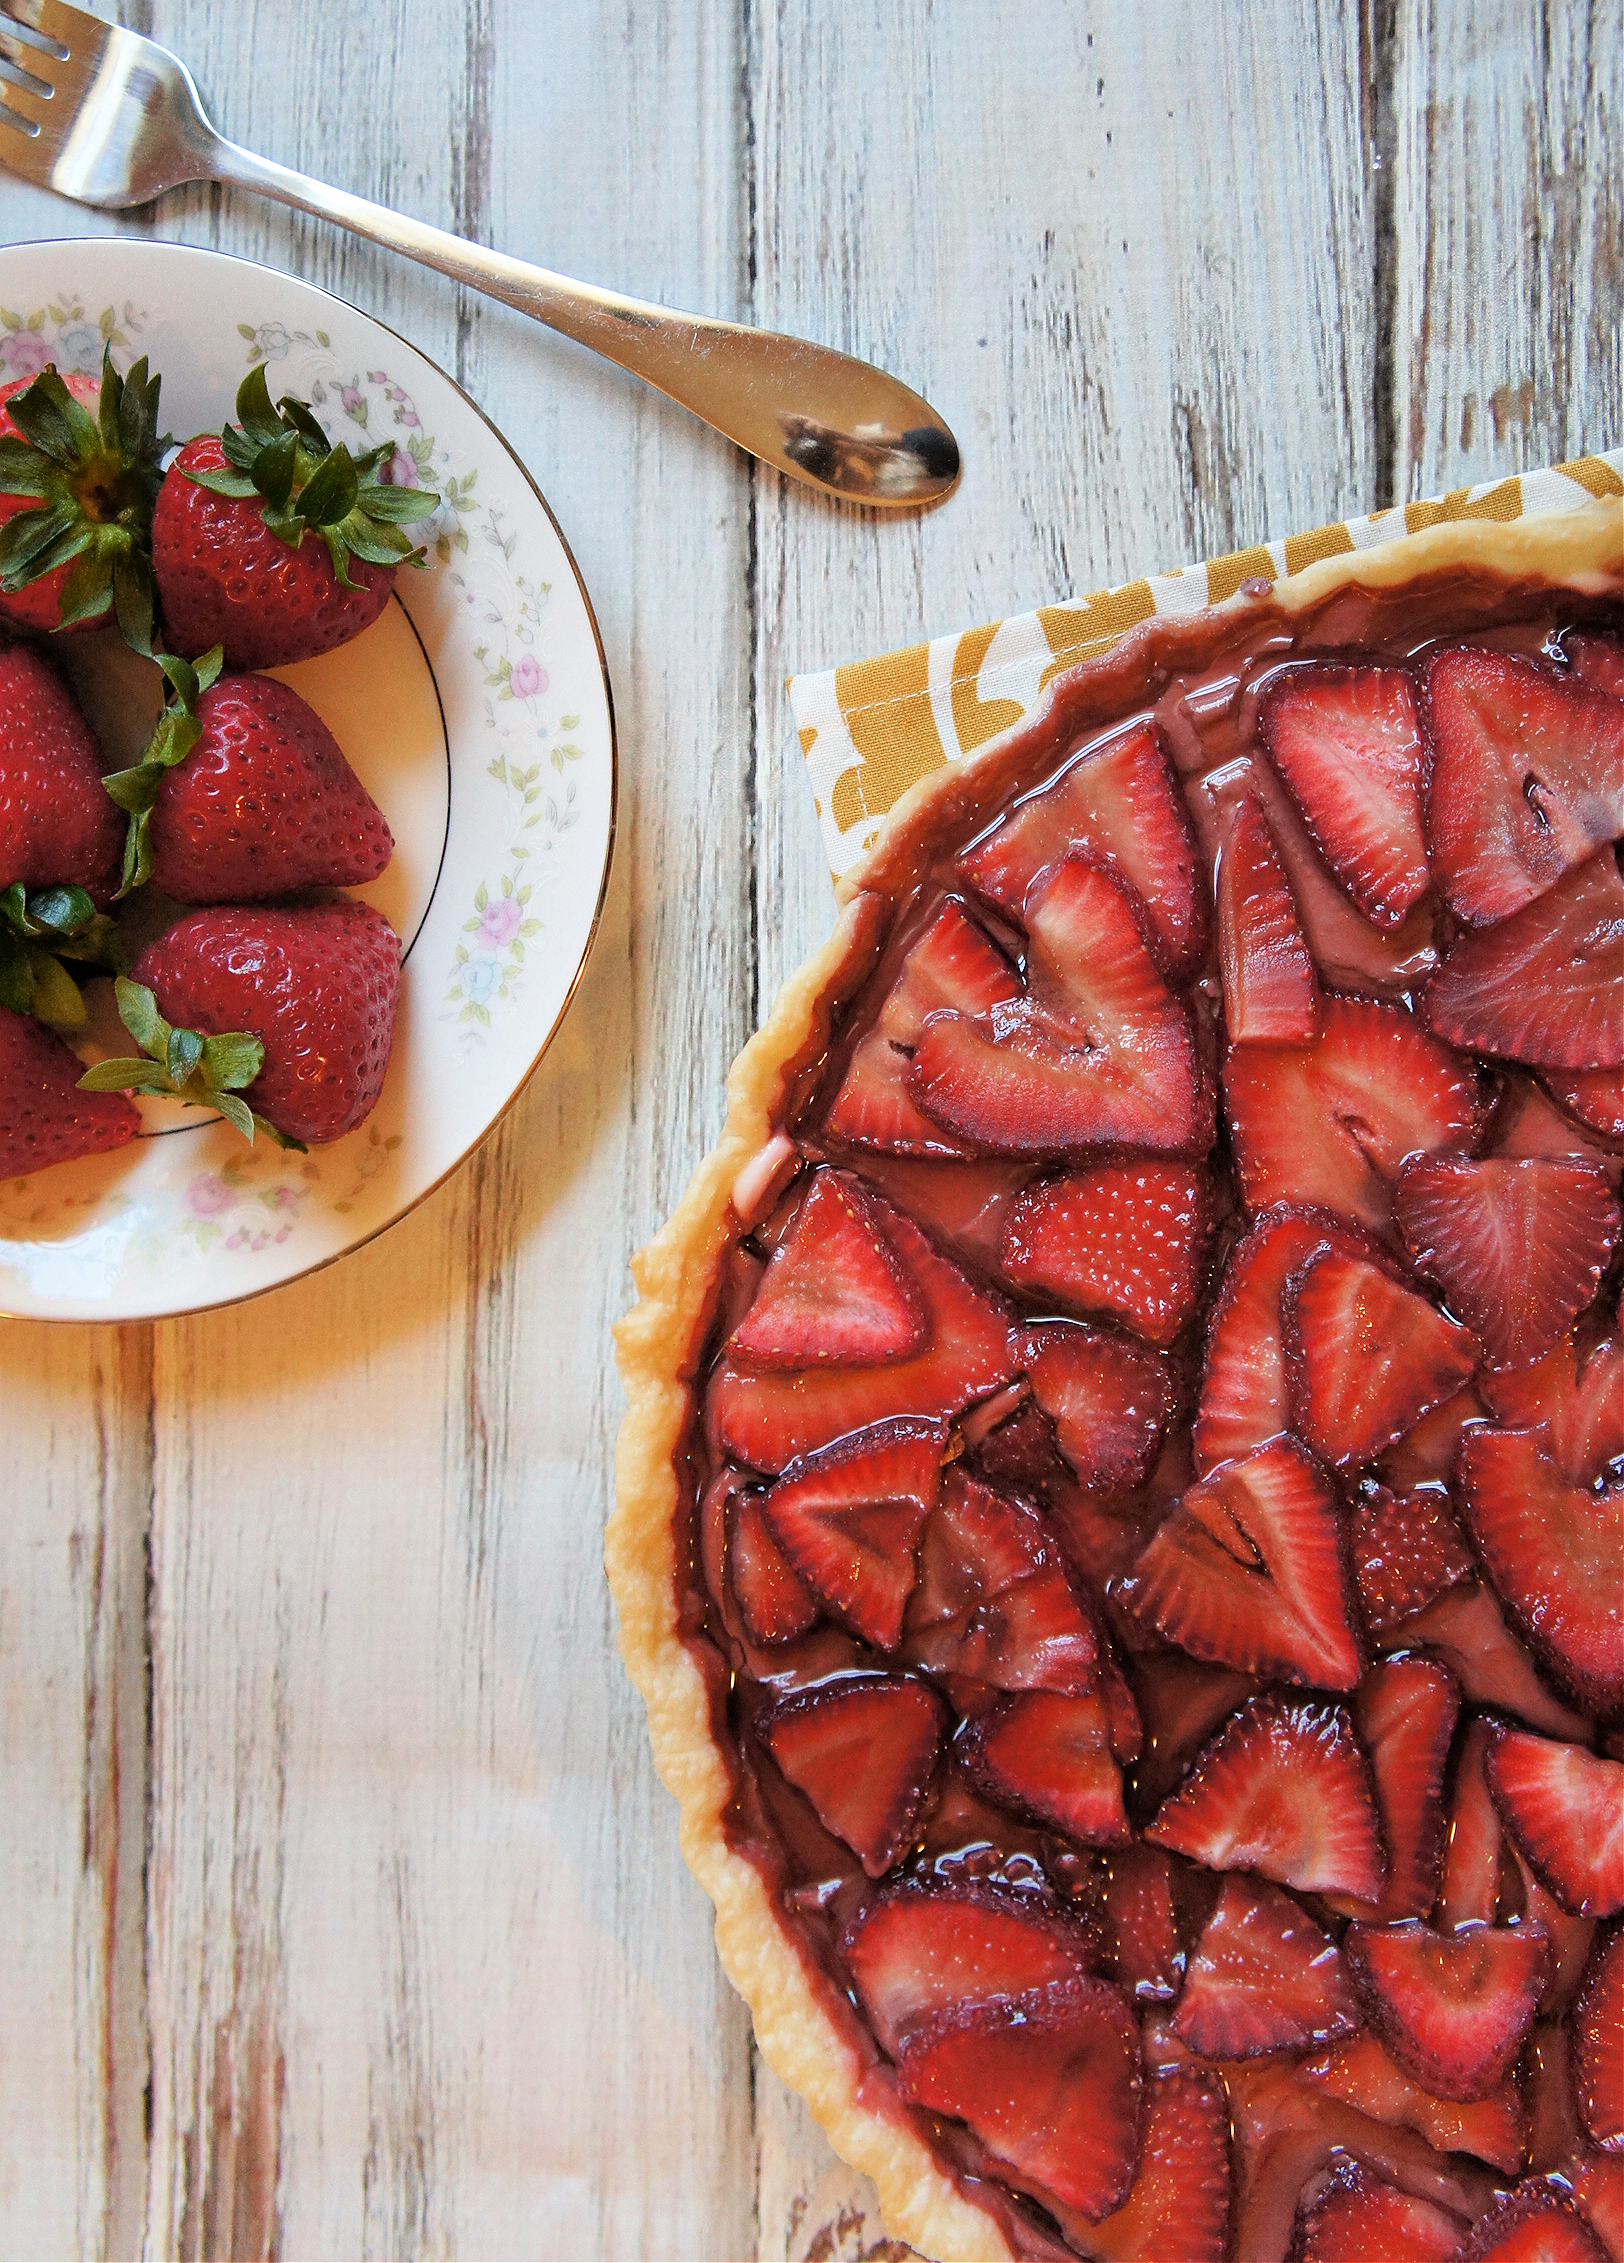 tart layered with strawberries